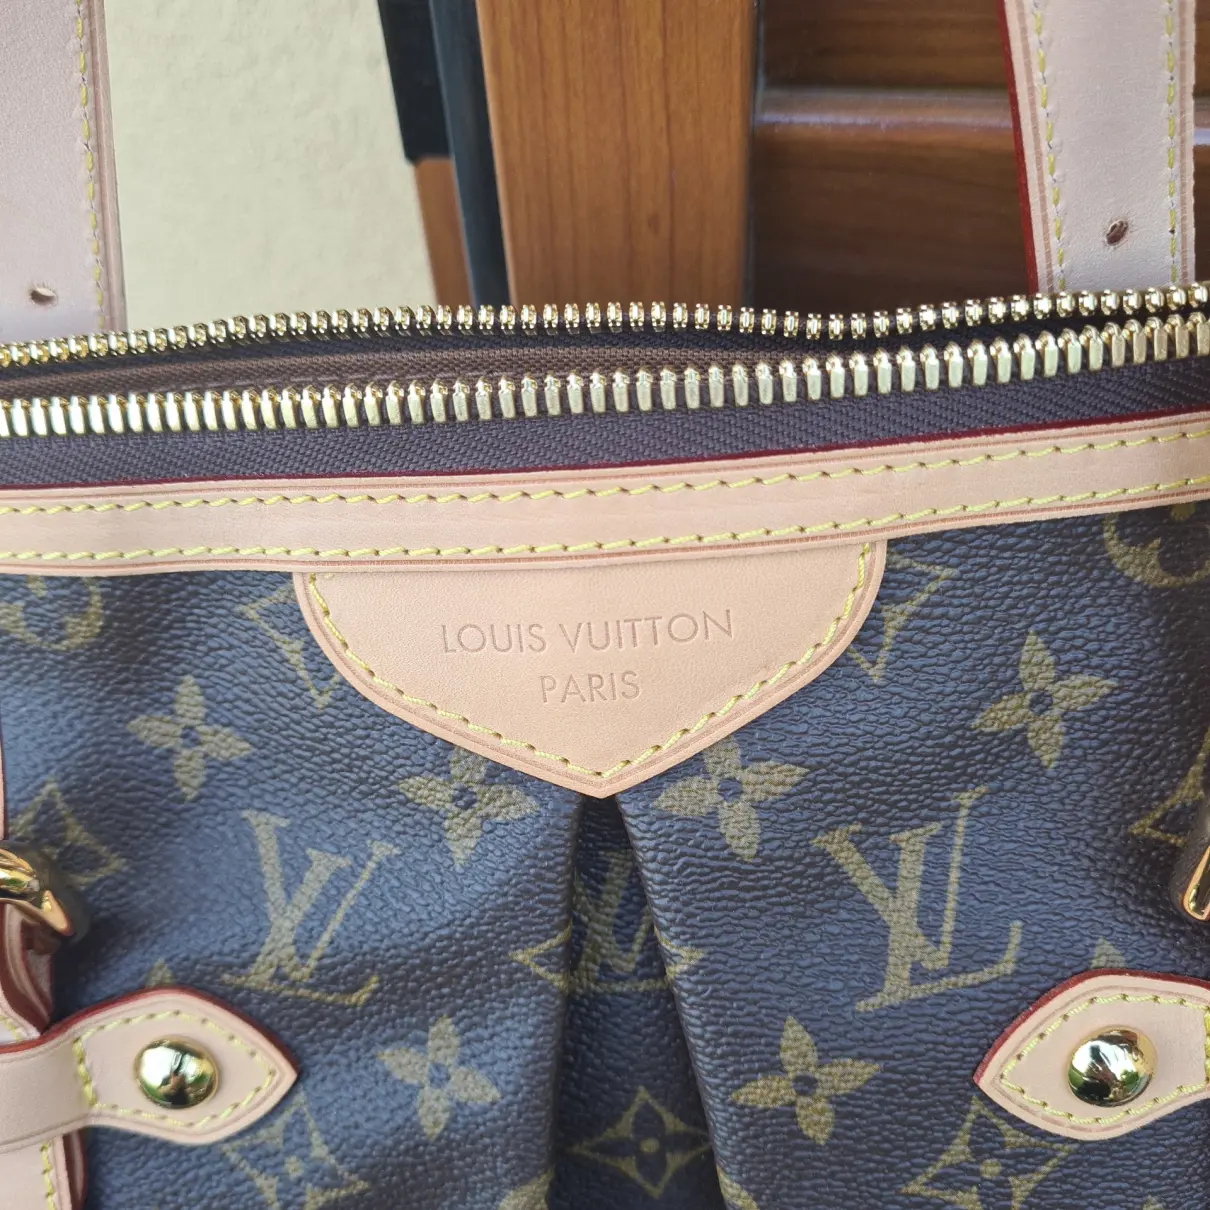 Buy Louis Vuitton Palermo handbag online